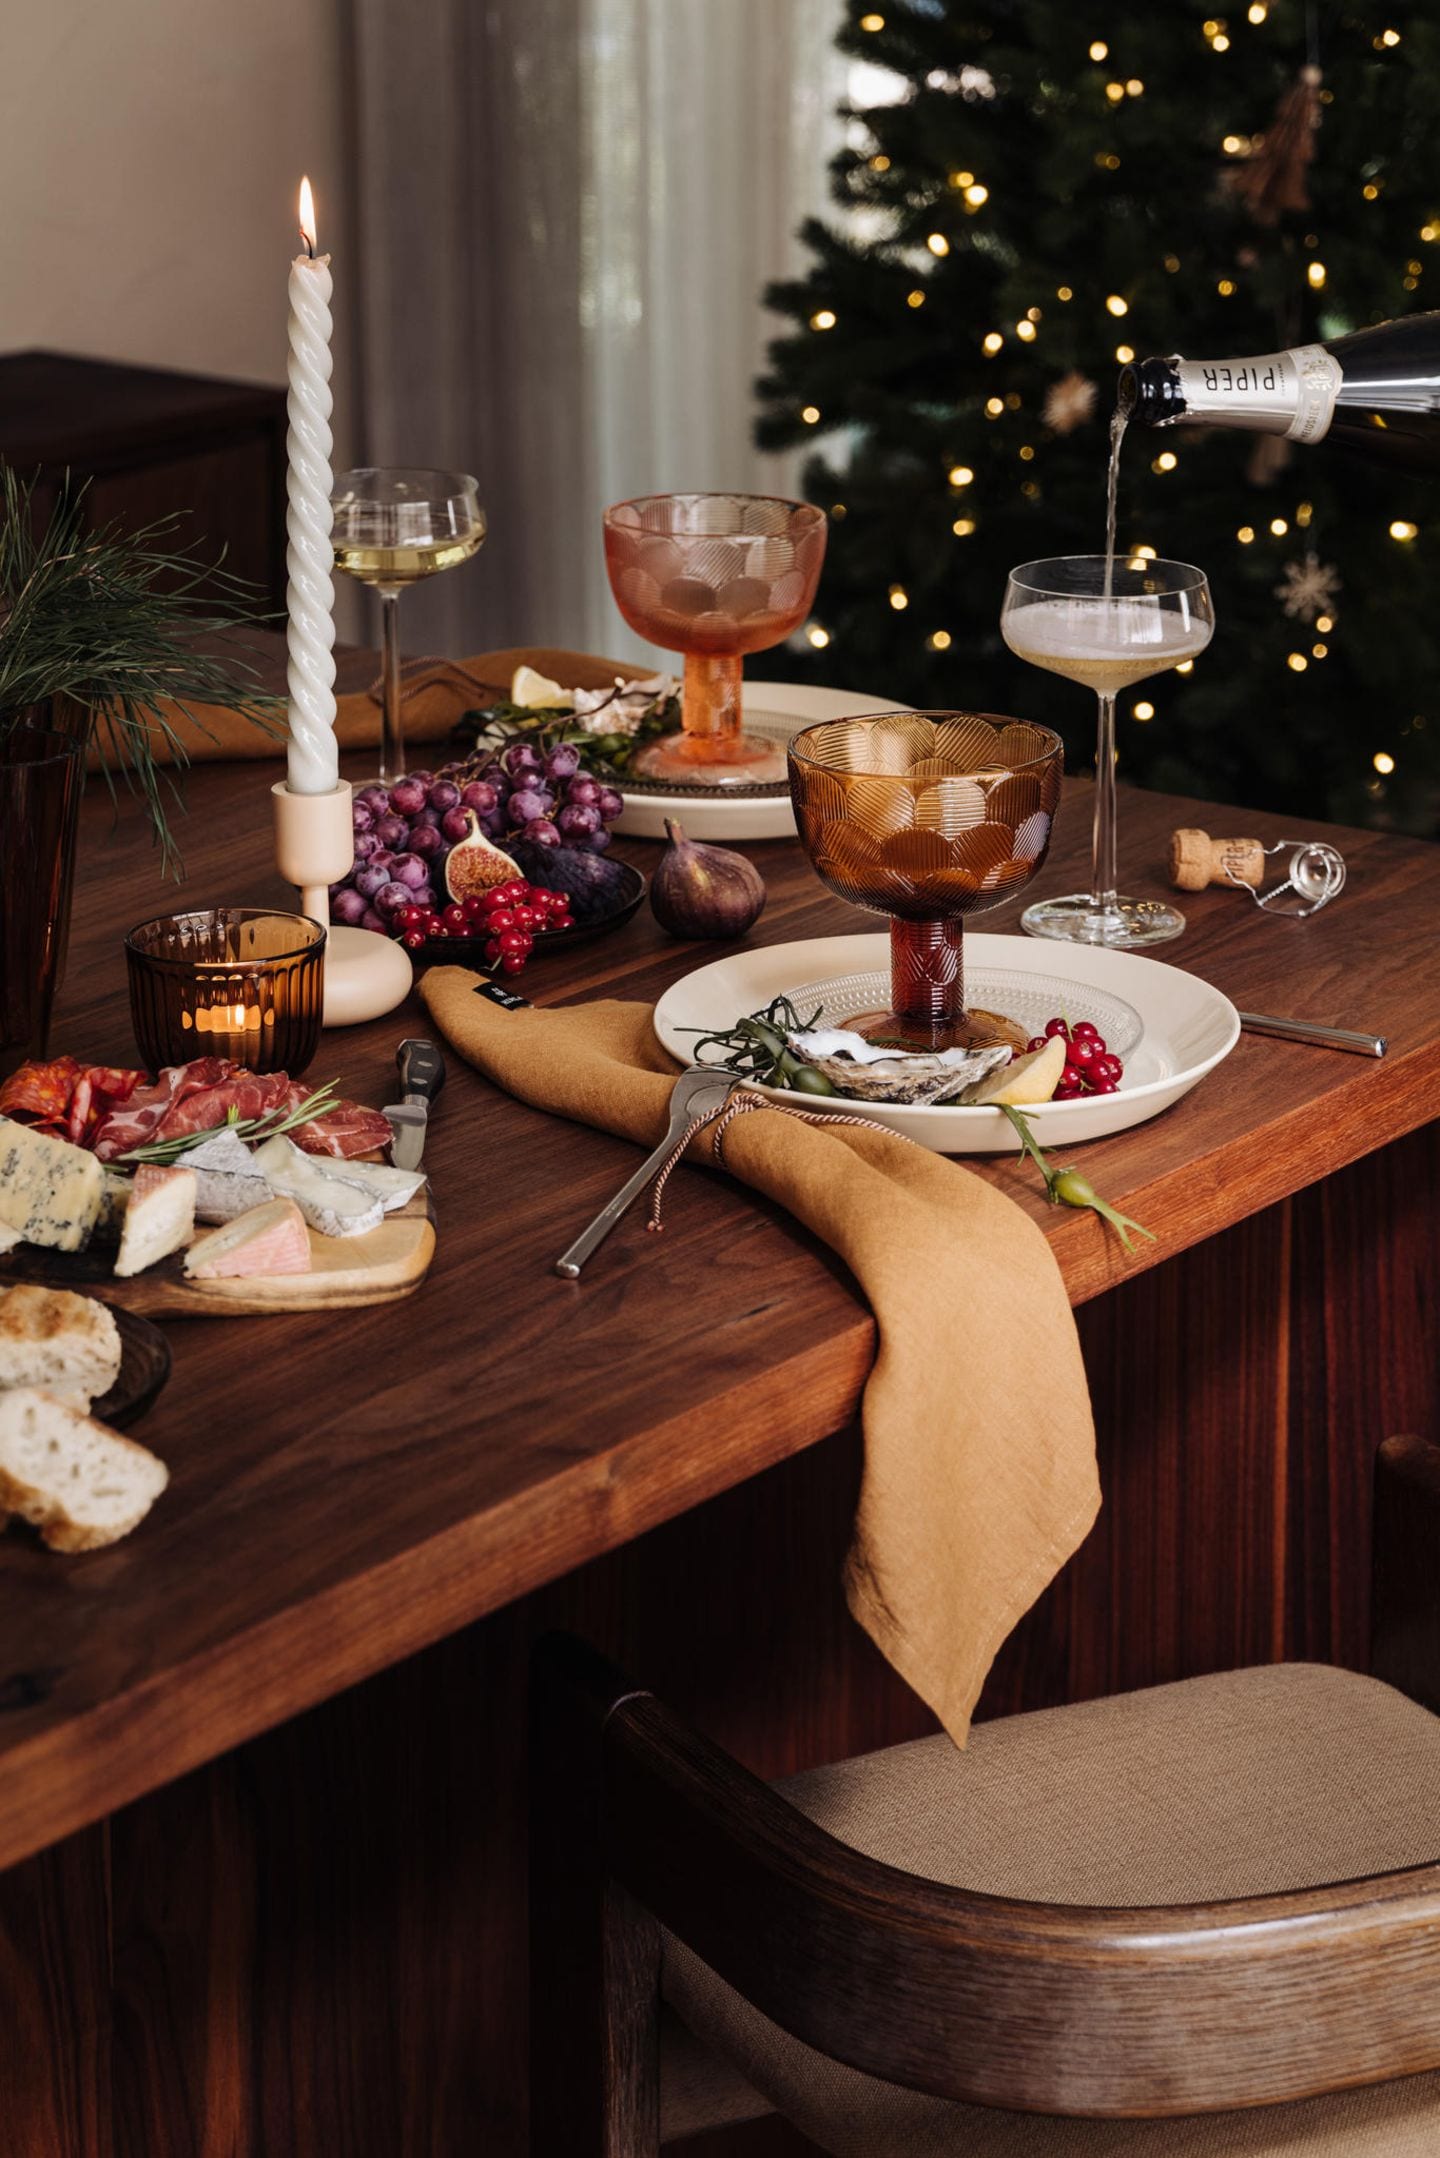 Rustikaler Weihnachtstisch mit Käsebrett und Trauben, erdfarbenem Geschirr und braunen Leinenservietten